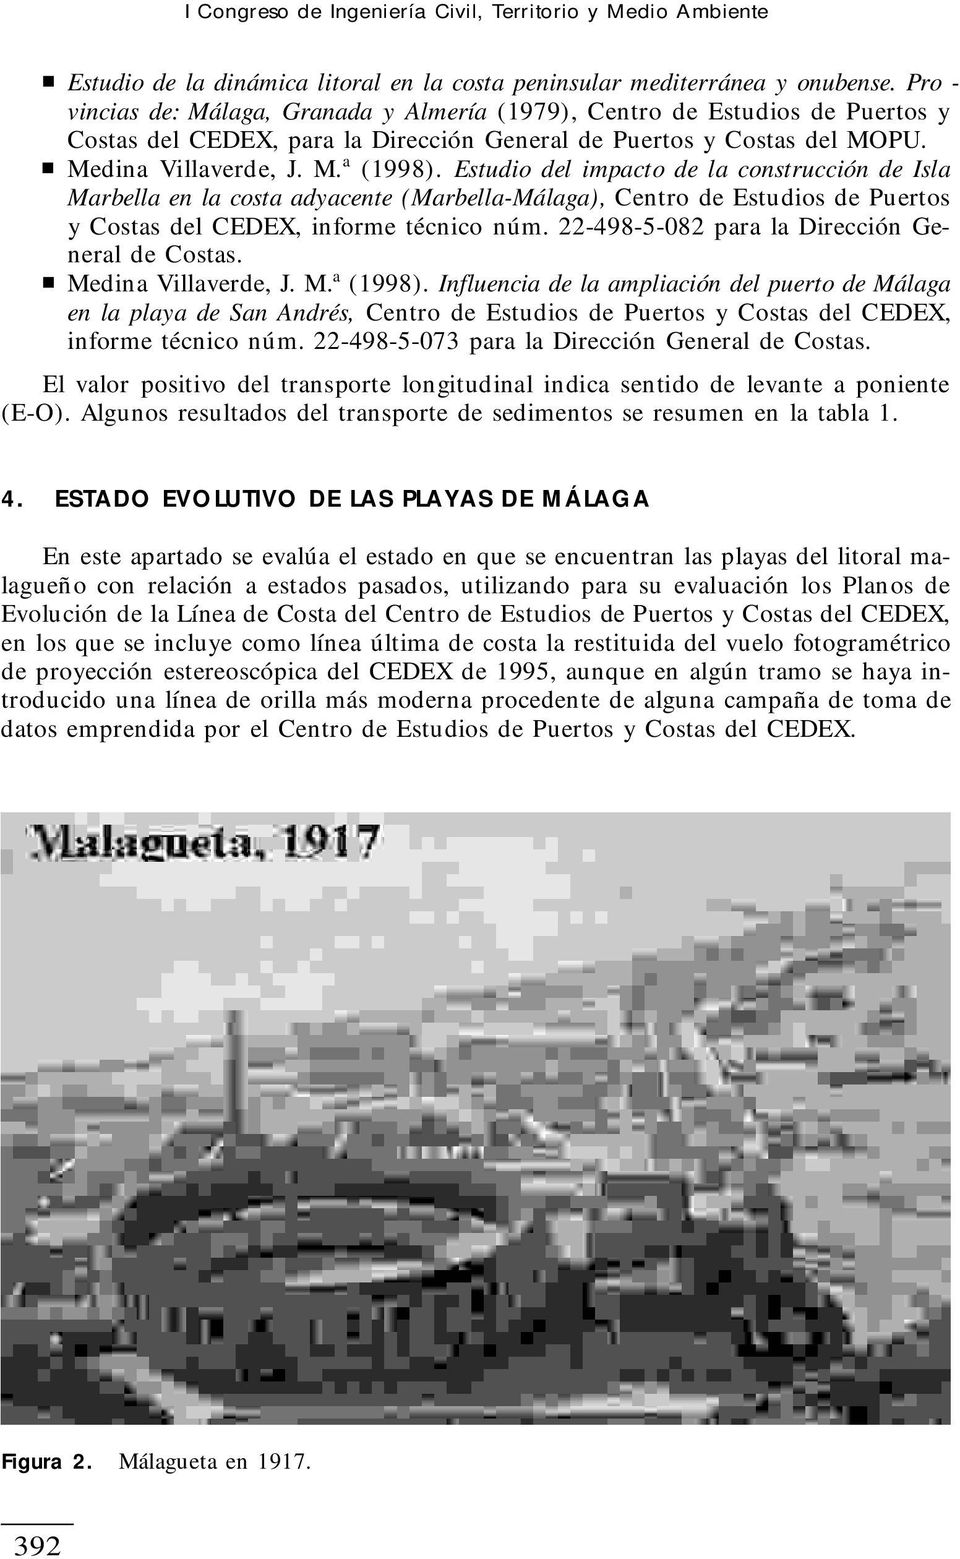 Estudio del impacto de la construcción de Isla Marbella en la costa adyacente (Marbella-Málaga), Centro de Estudios de Puertos y Costas del CEDEX, informe técnico núm.